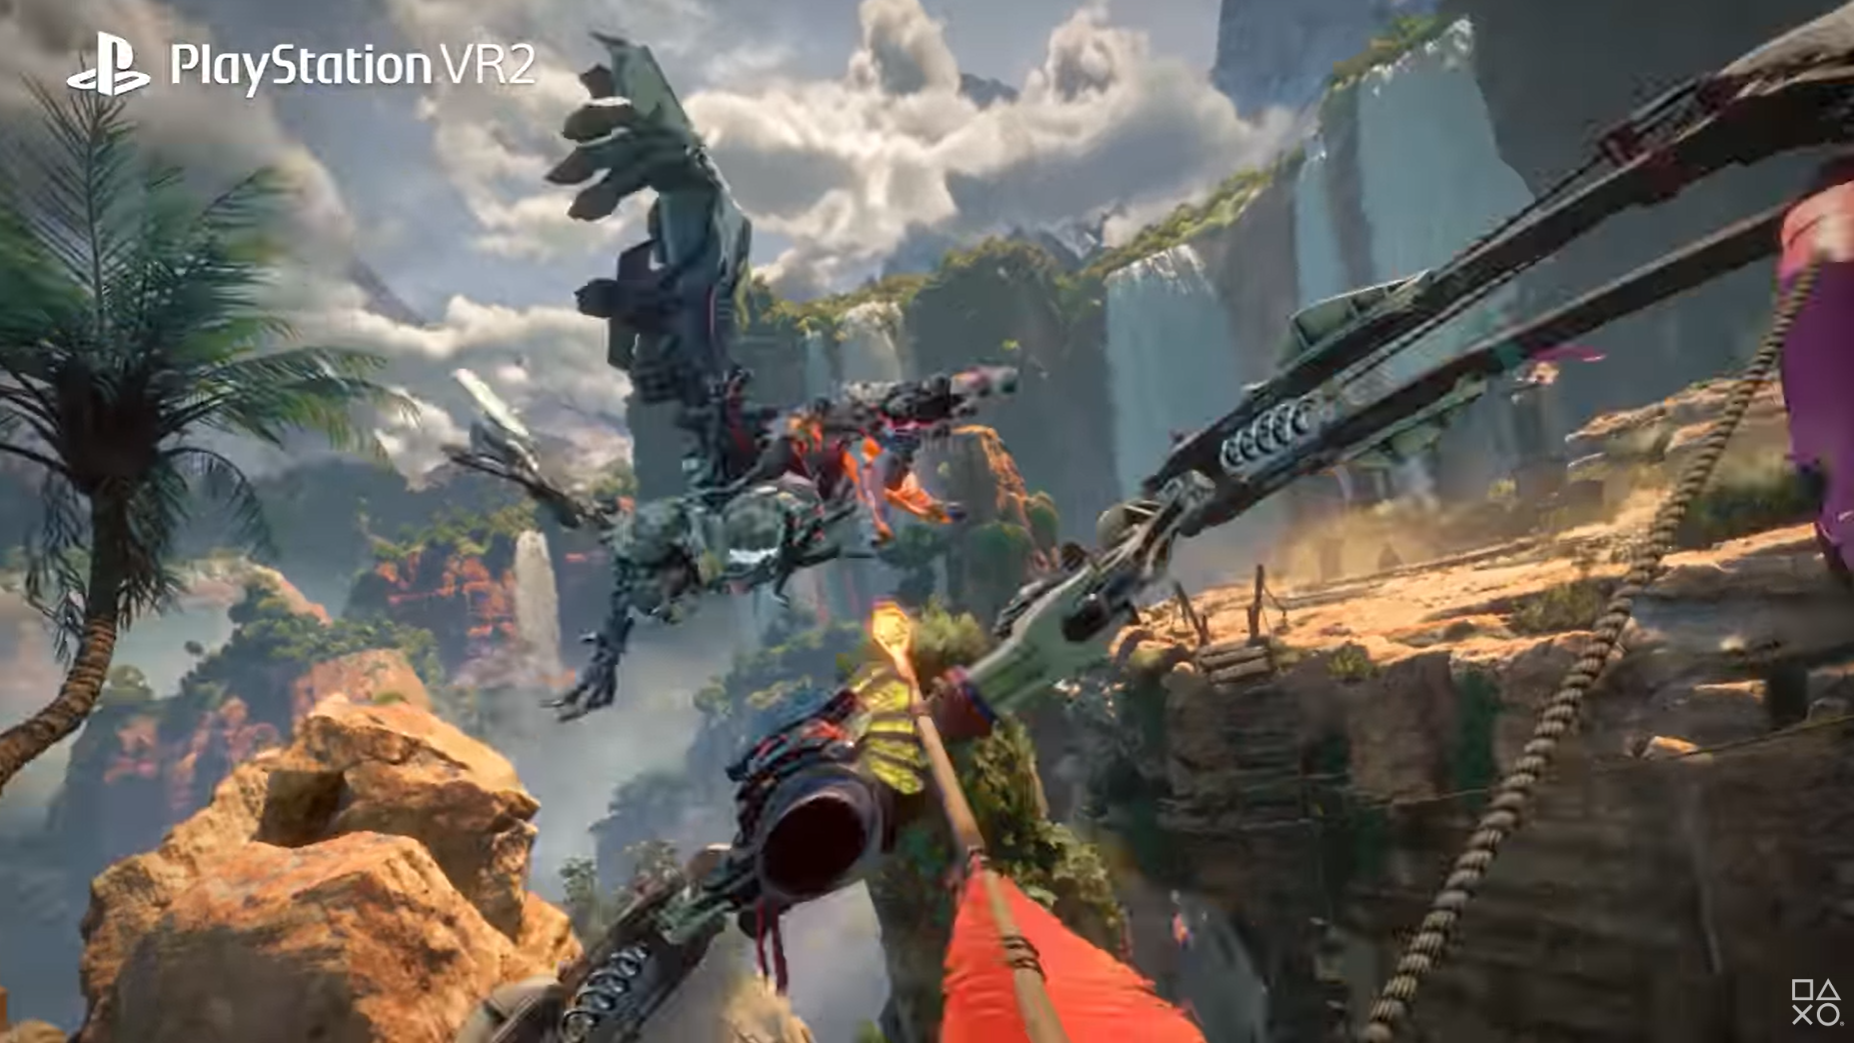 Capture d'écran de la bande-annonce Horizon Call of the Mountain PS VR2 sur YouTube.